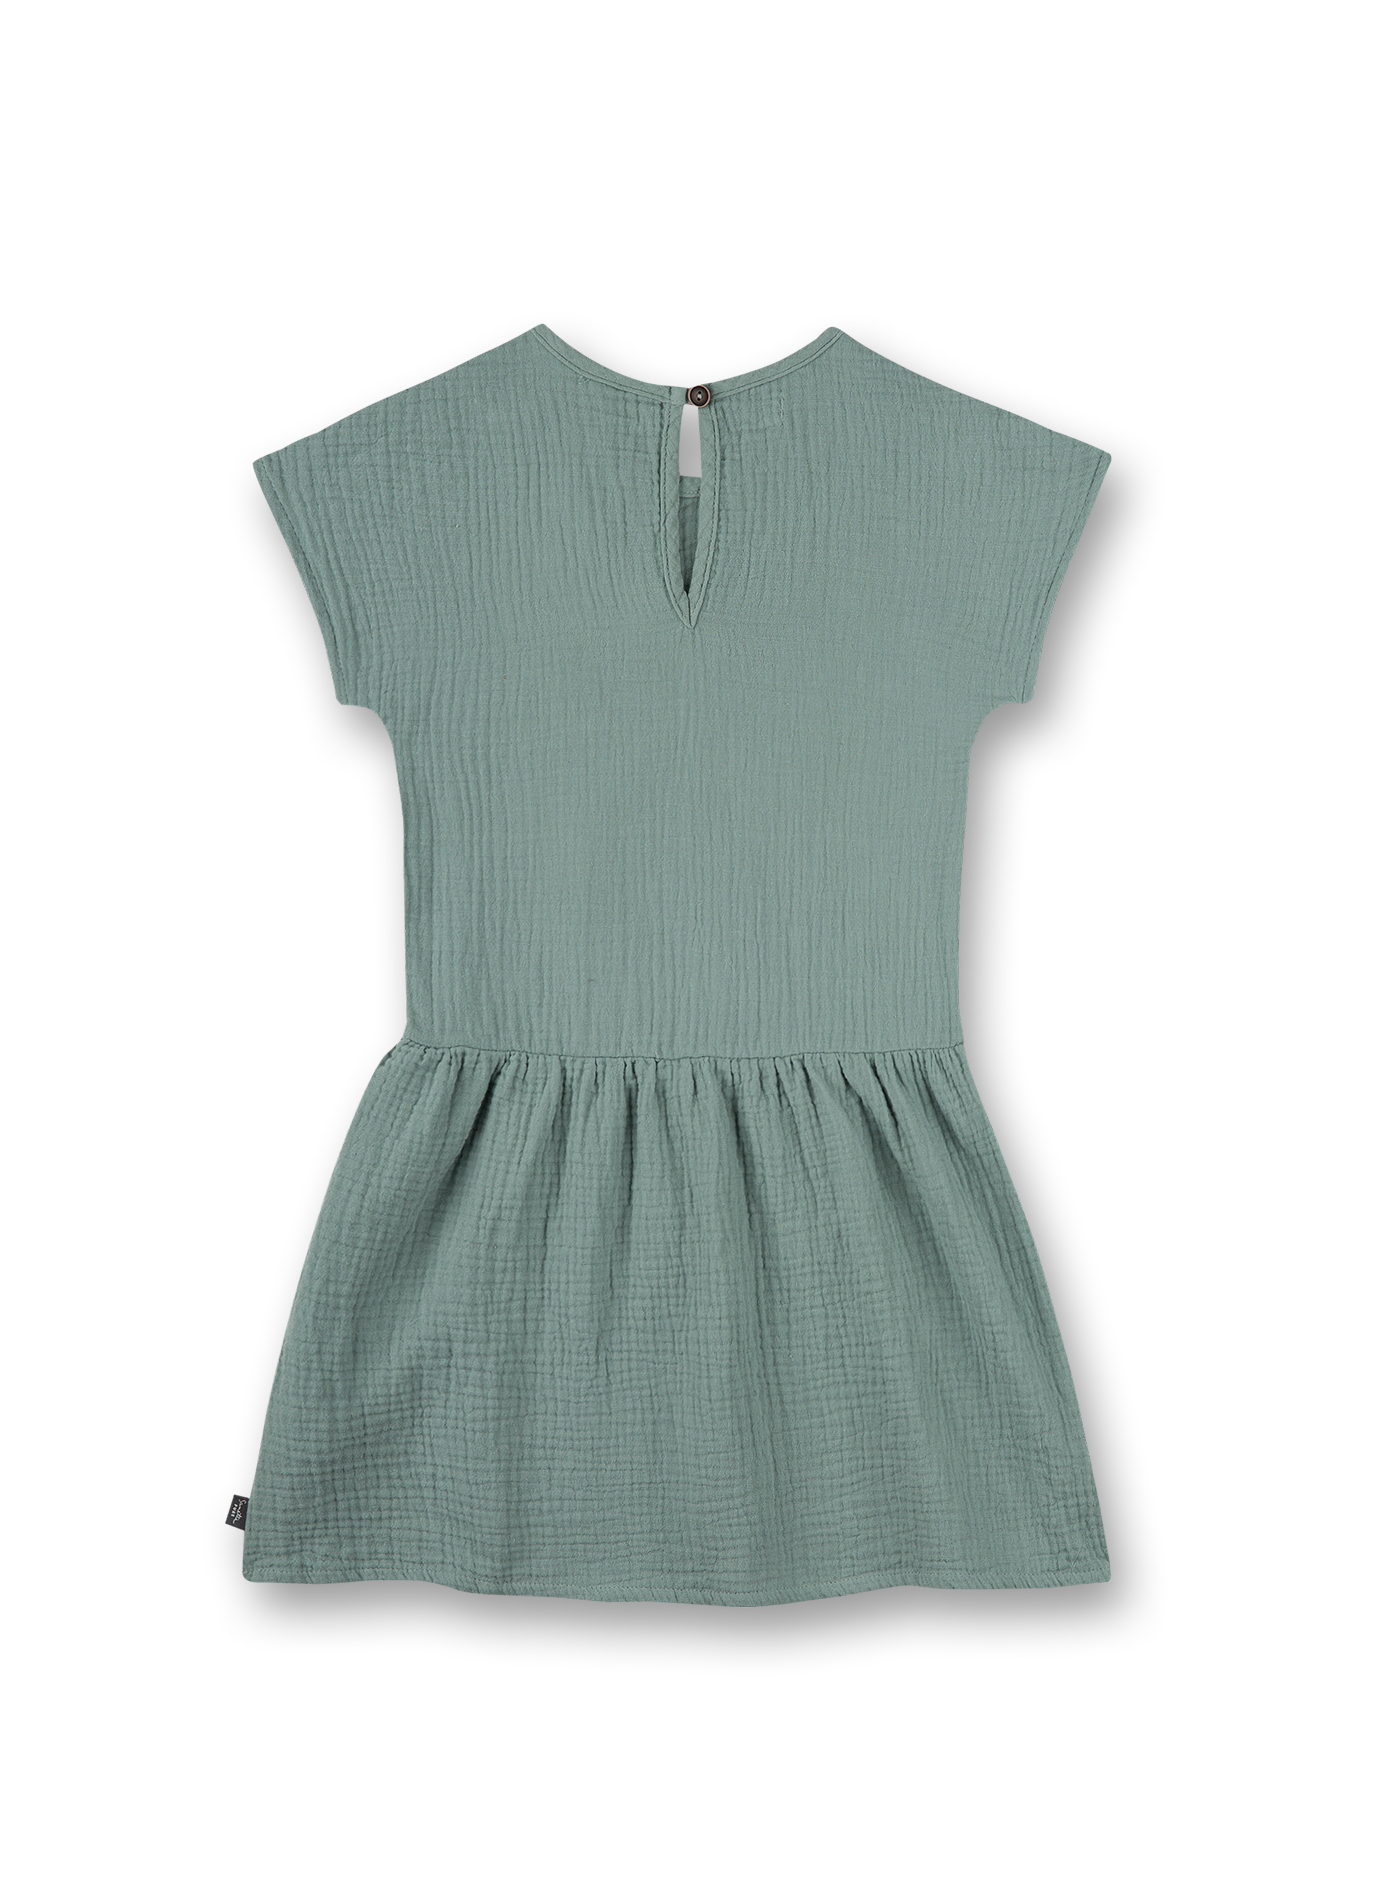 Mädchen-Kleid Grün